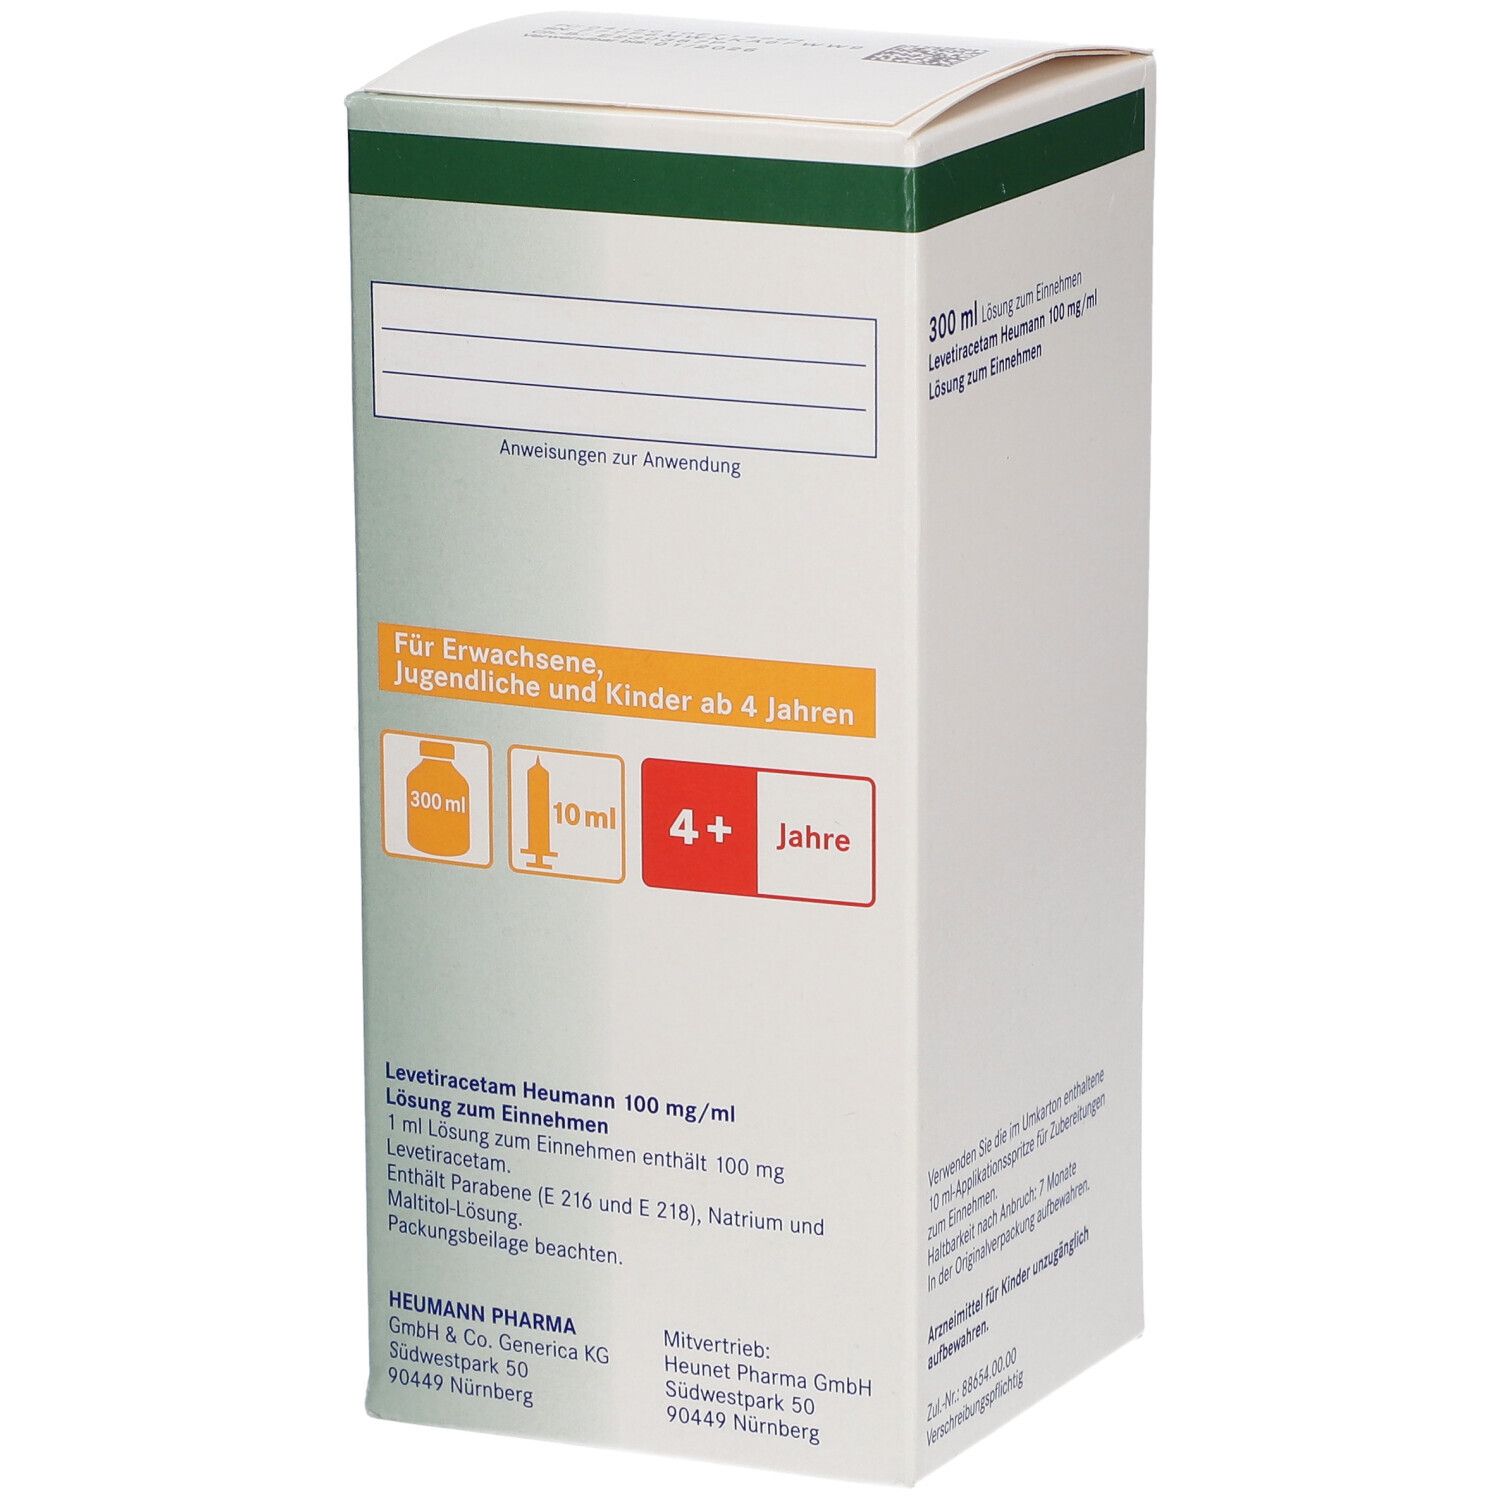 Levetiracetam Heumann 100 mg/ml